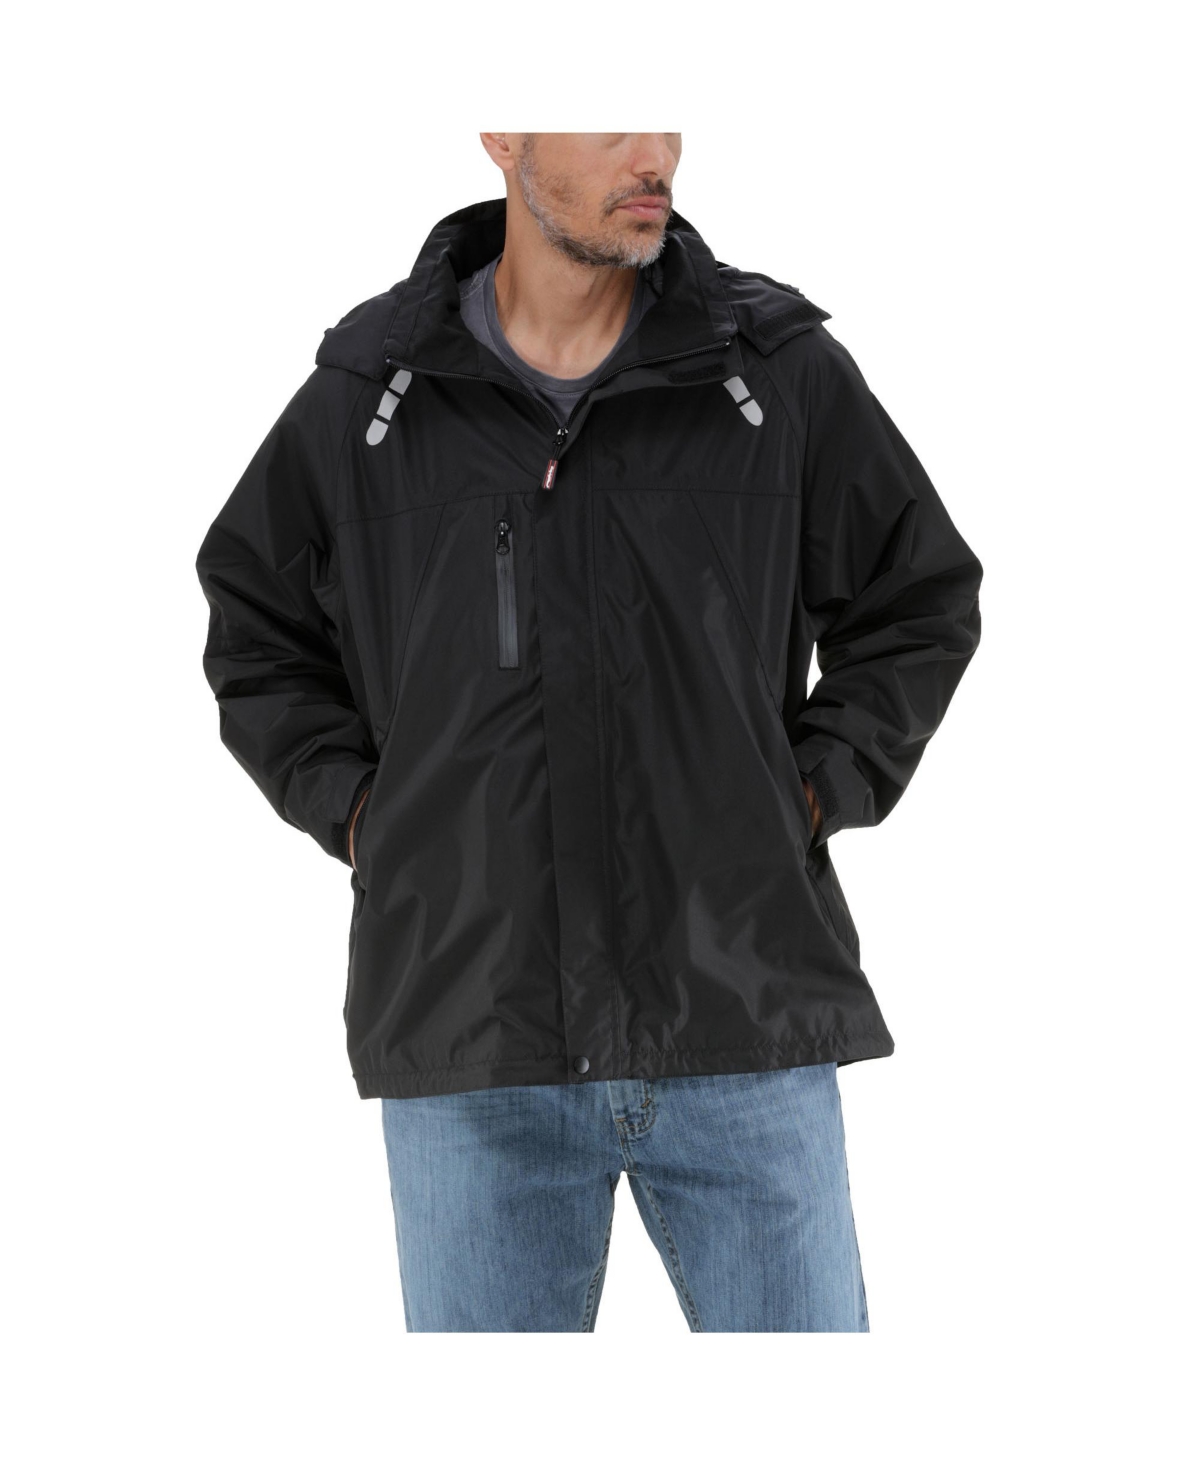 Men's Lightweight Rain Jacket - Waterproof Raincoat with Detachable Hood - Black